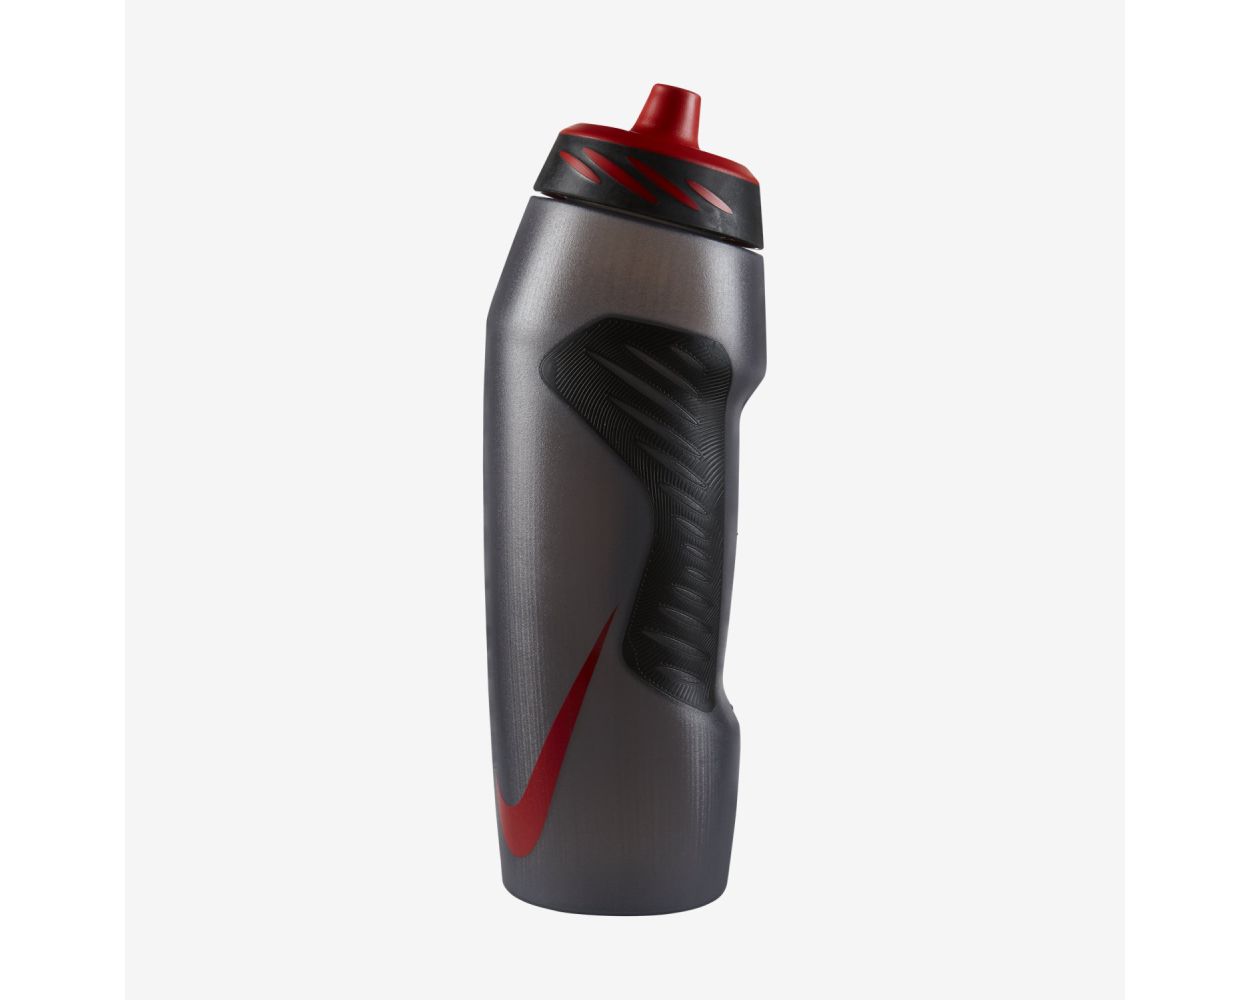 Nike Hyperfuel 32-oz. Water Bottle